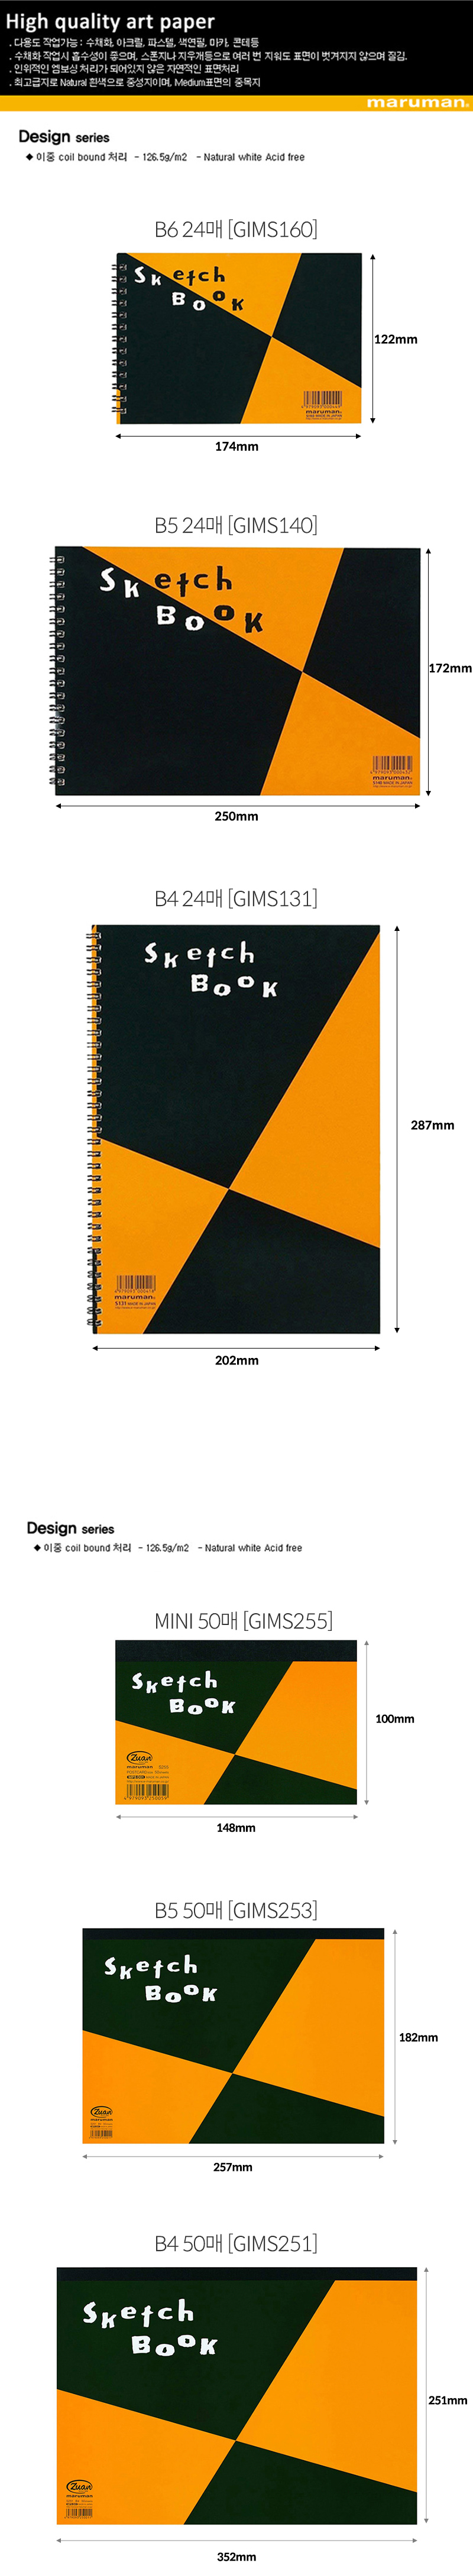 마루맨 디자인 스케치북 중목 126.5g 상세 및 사이즈